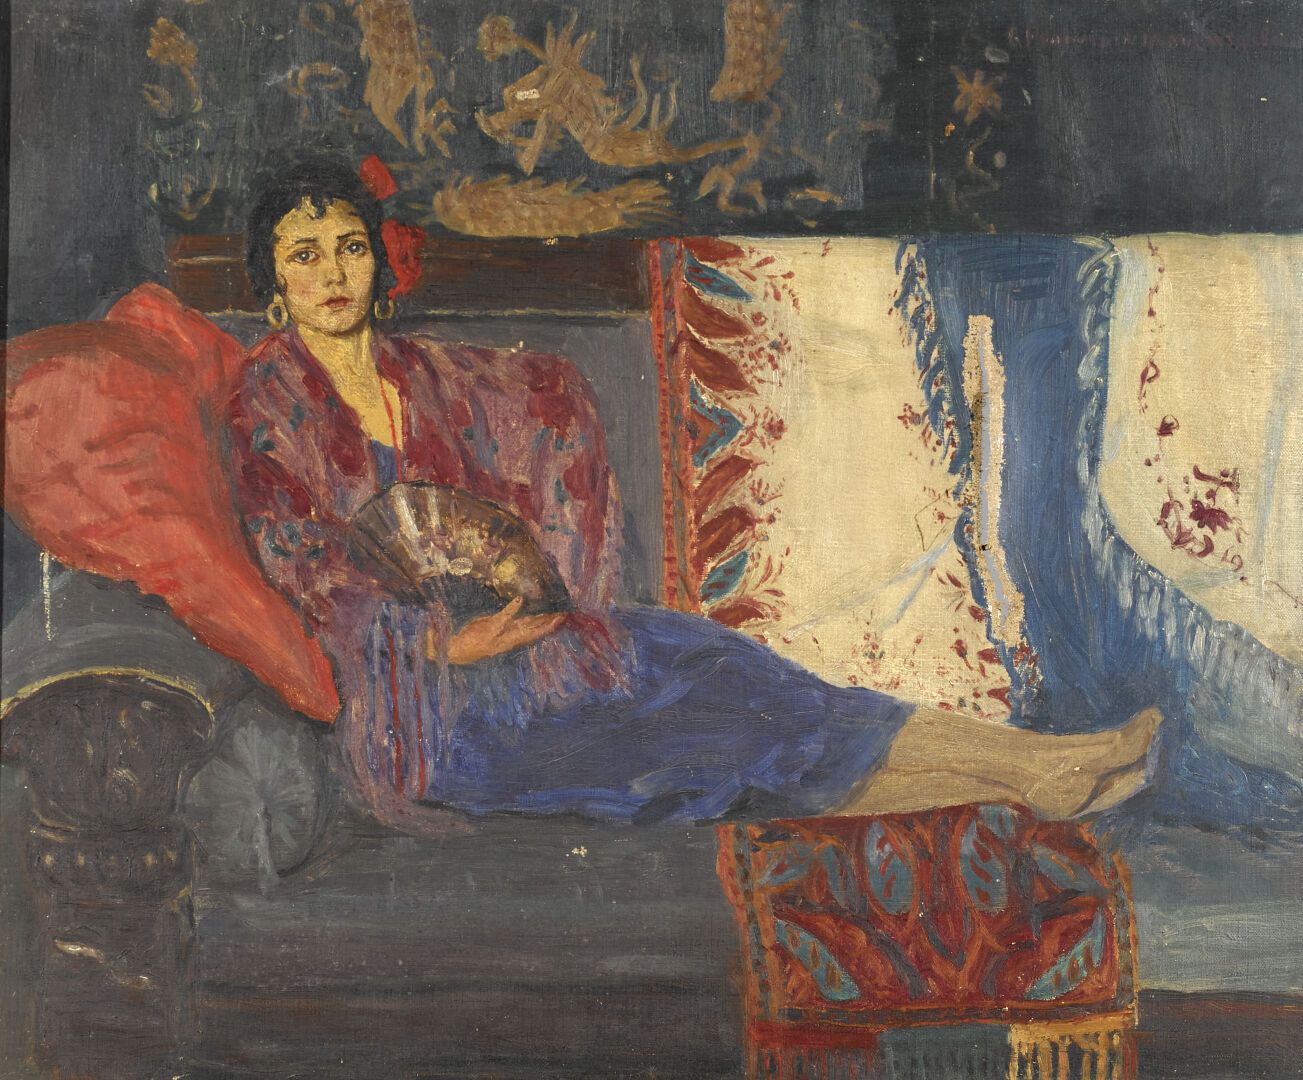 Null 雷切尔-福尔曼特罗-温斯洛(1880-1974)

2幅画一起呈现。



"一个女人的画像

布面油画，右下角有签名

42 x 32 厘米

经清&hellip;